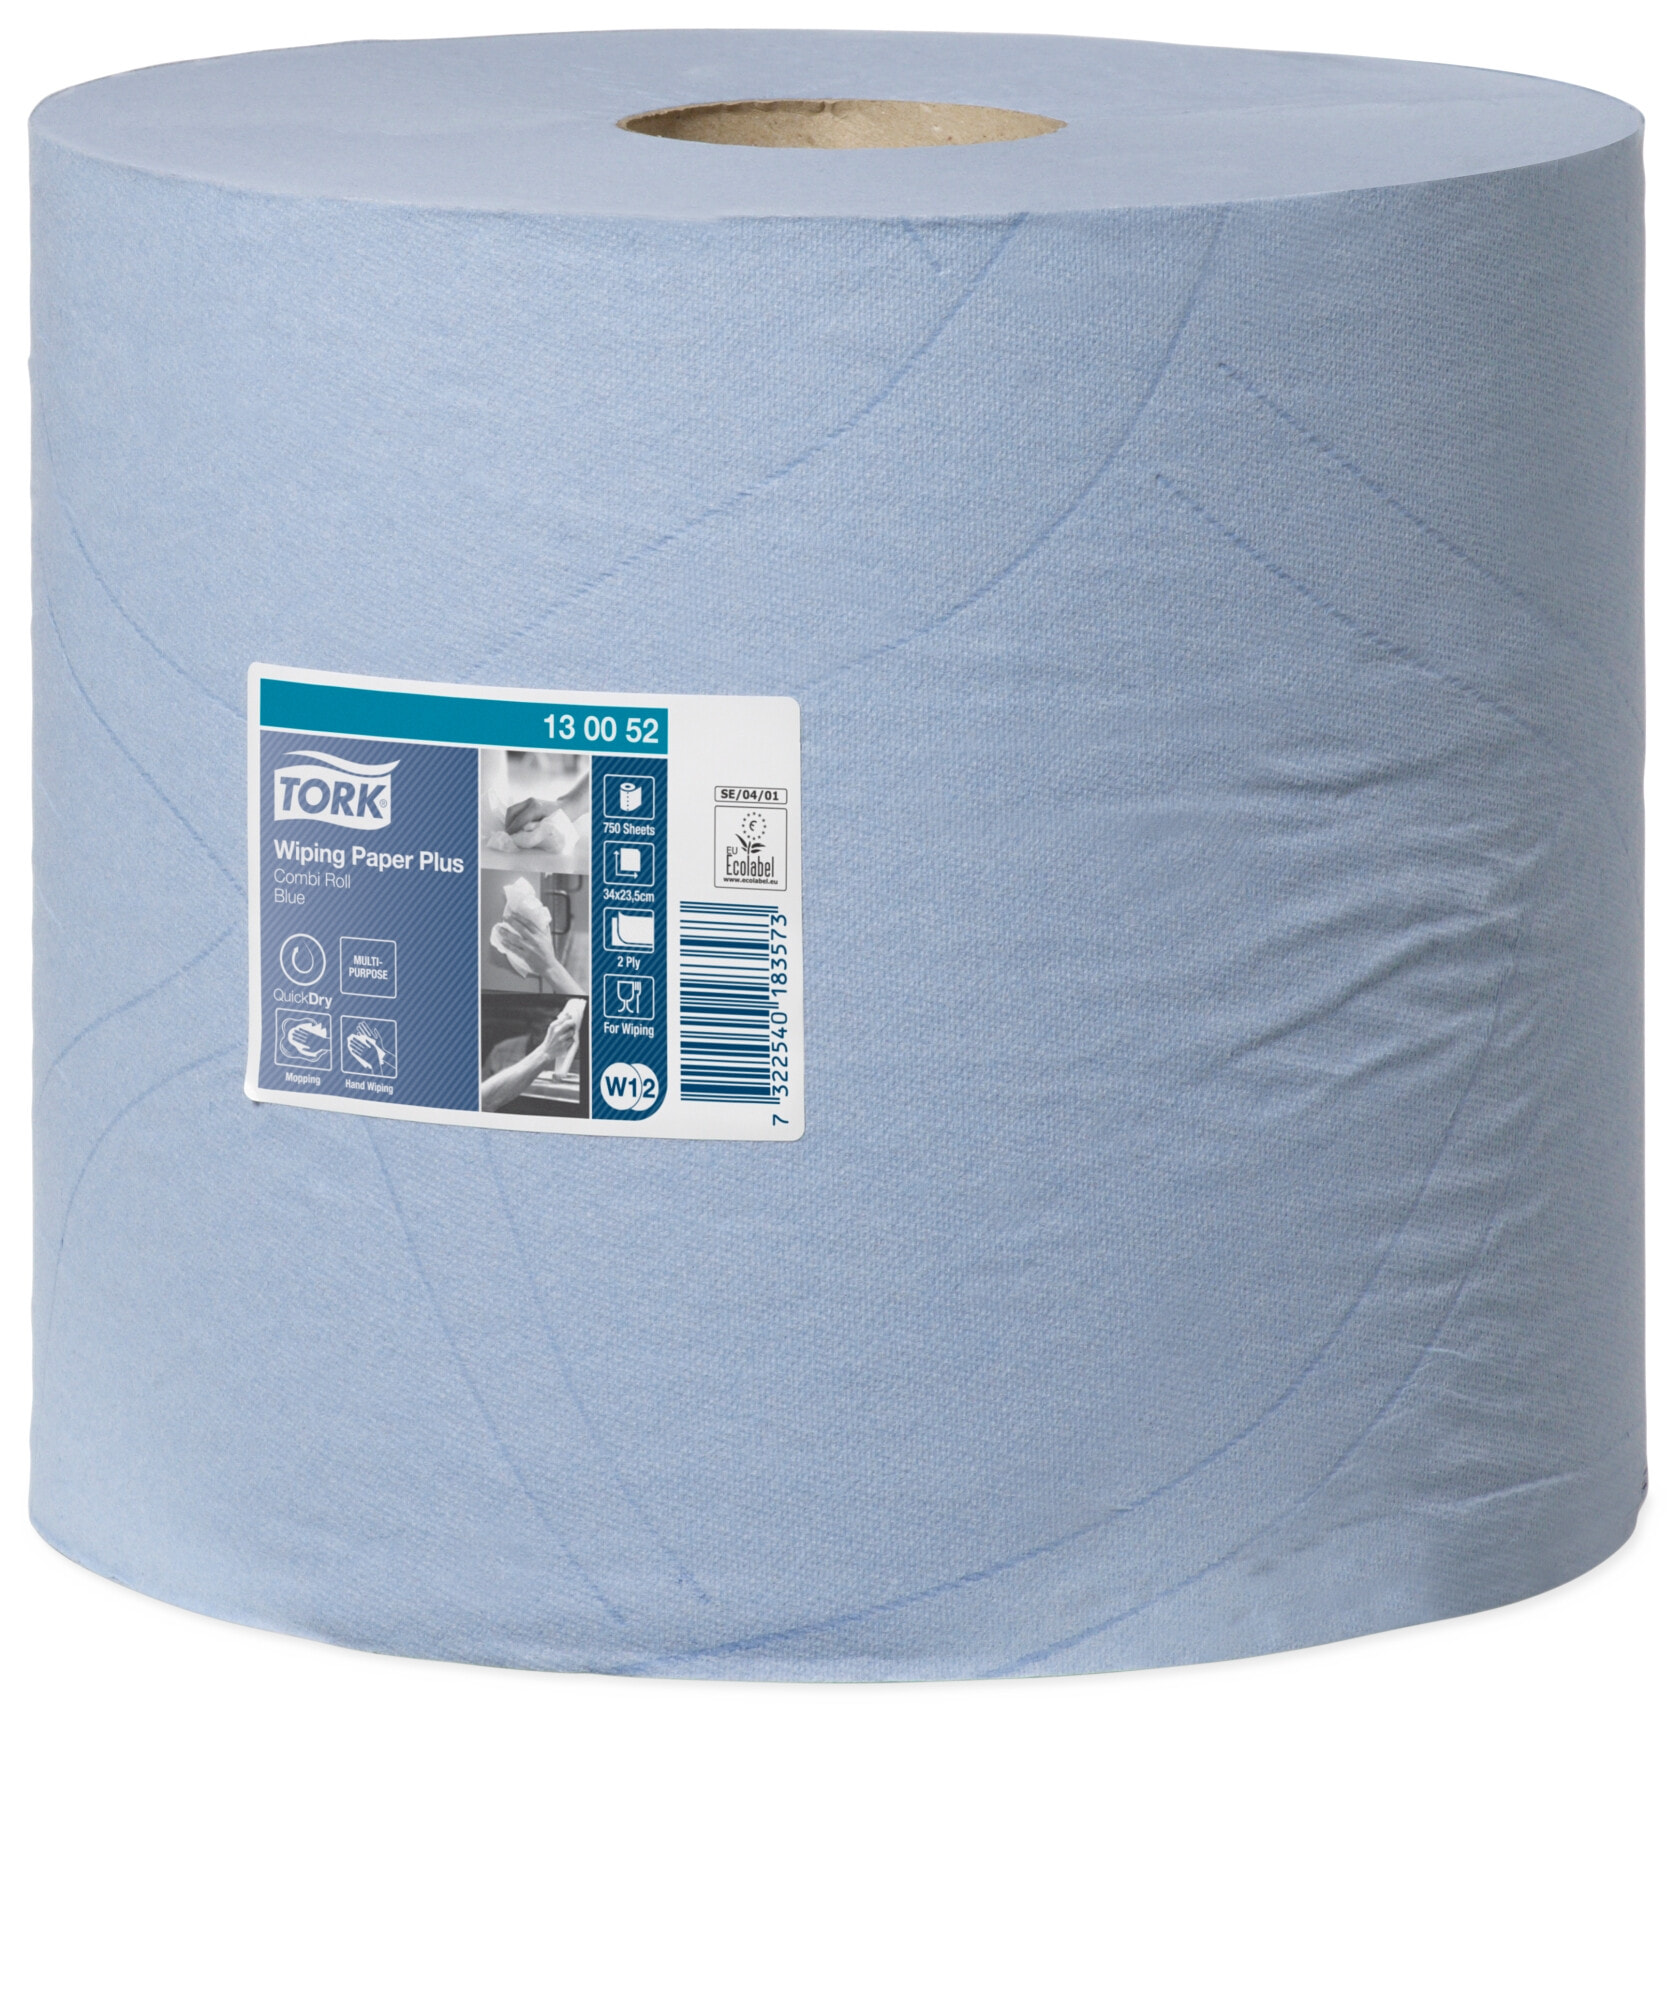 Tork Wiping Paper Plus  Многоцелевые бумажные салфетки 2 слойная Синяя   262 х 262 х 235 мм, 255 м, 2 шт